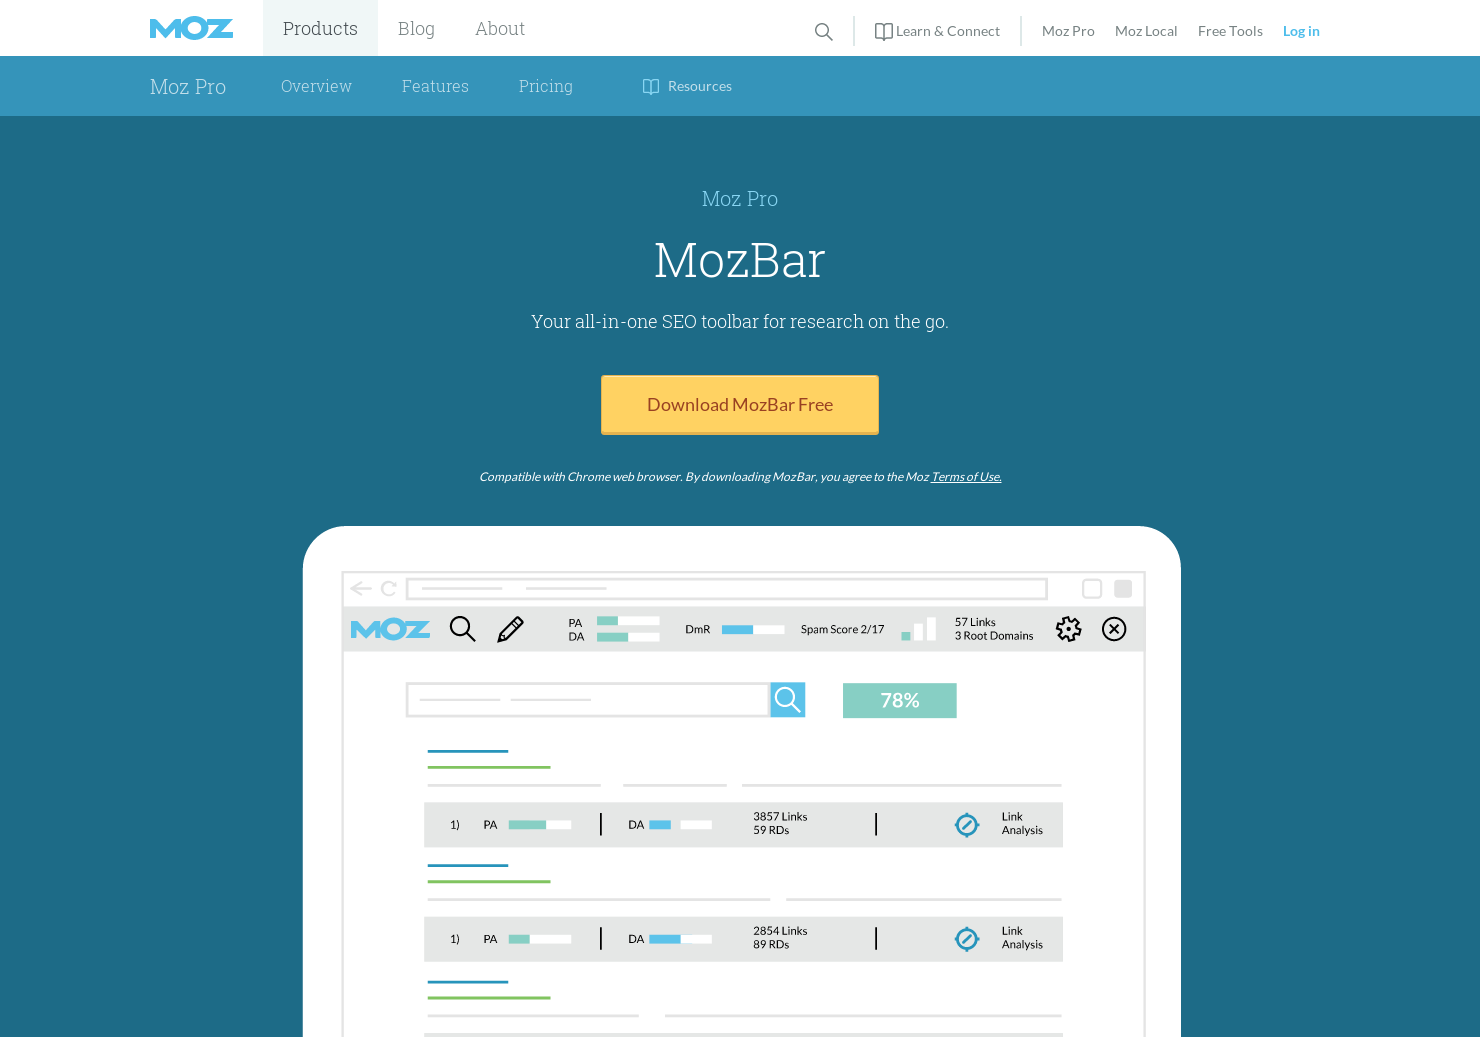 MozBar 3.0